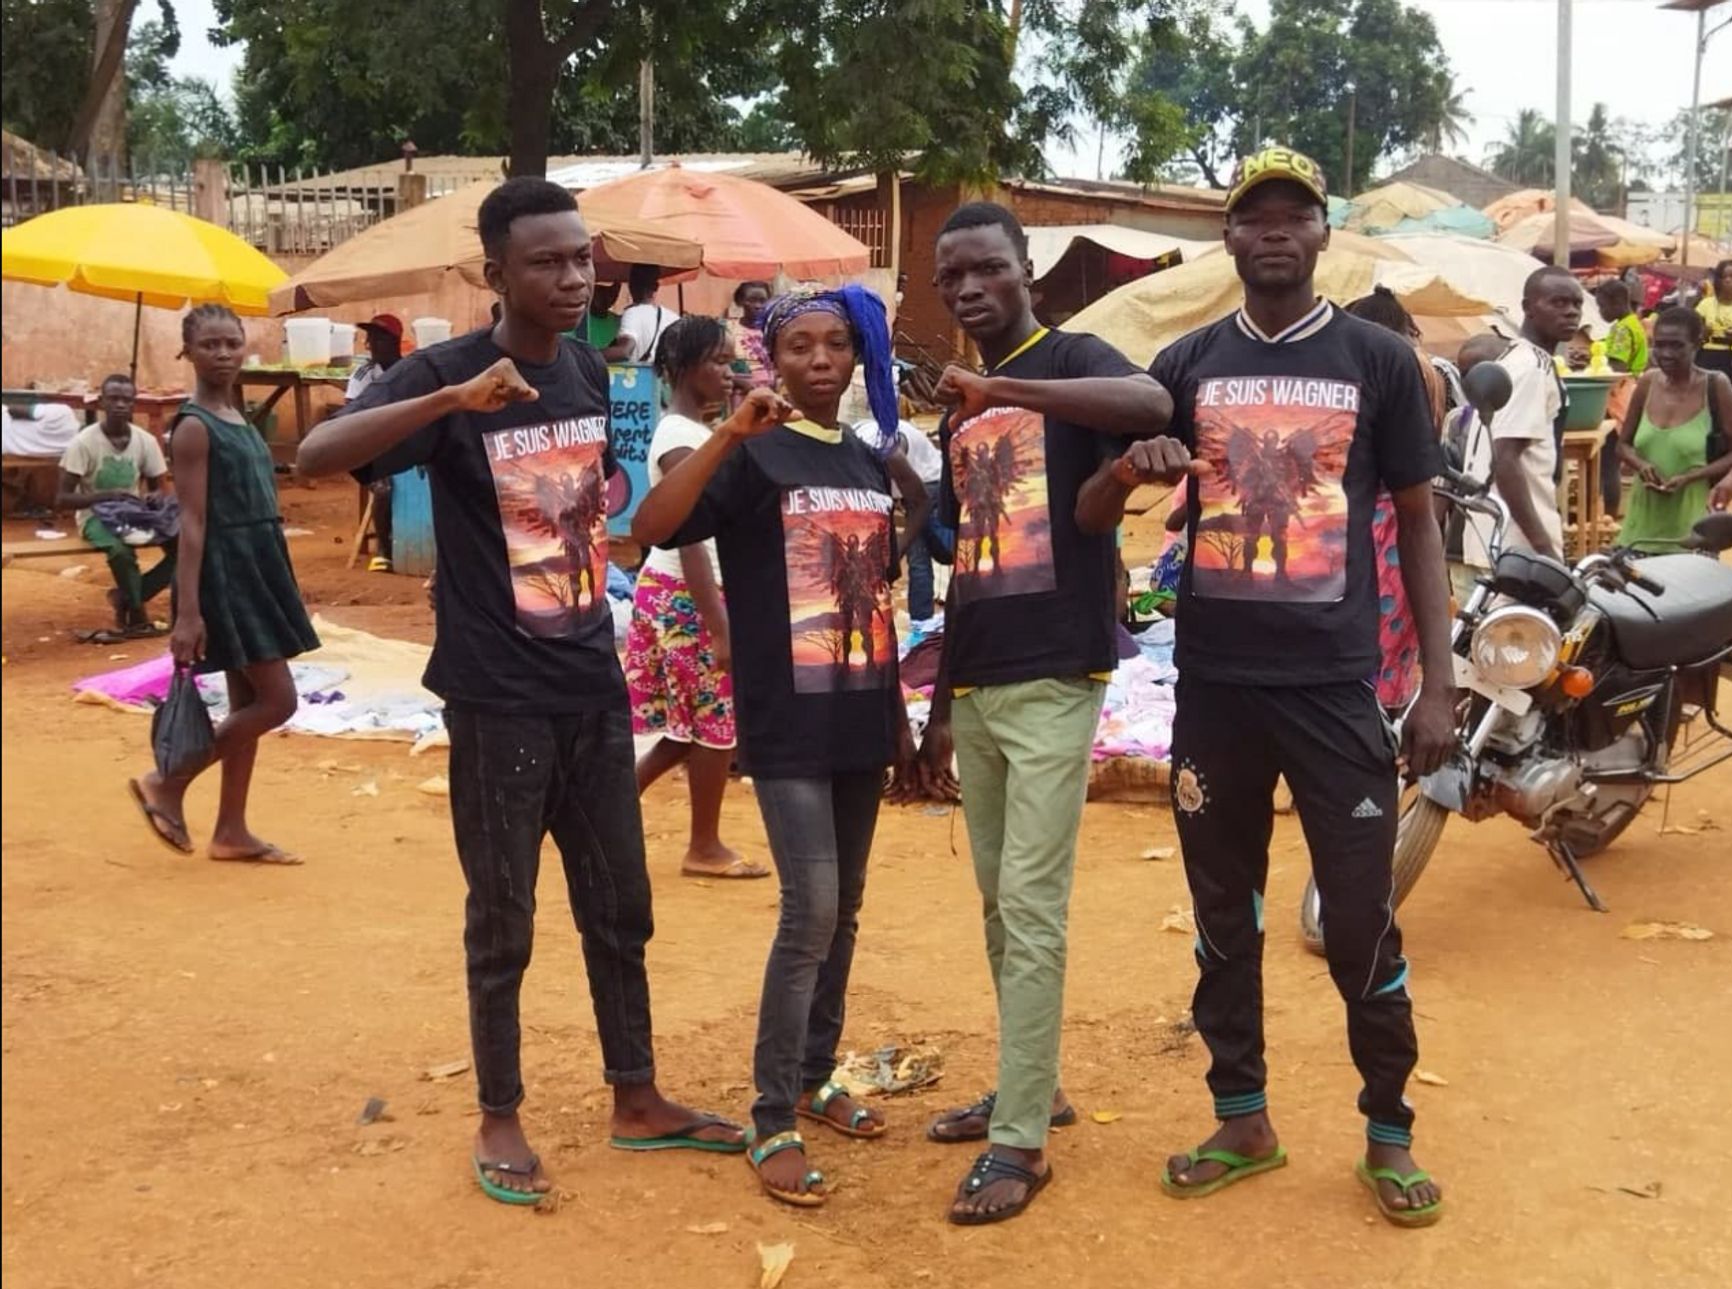 Группа жителей Центральноафриканской Республики в футболках с надписью Je suis Wagner